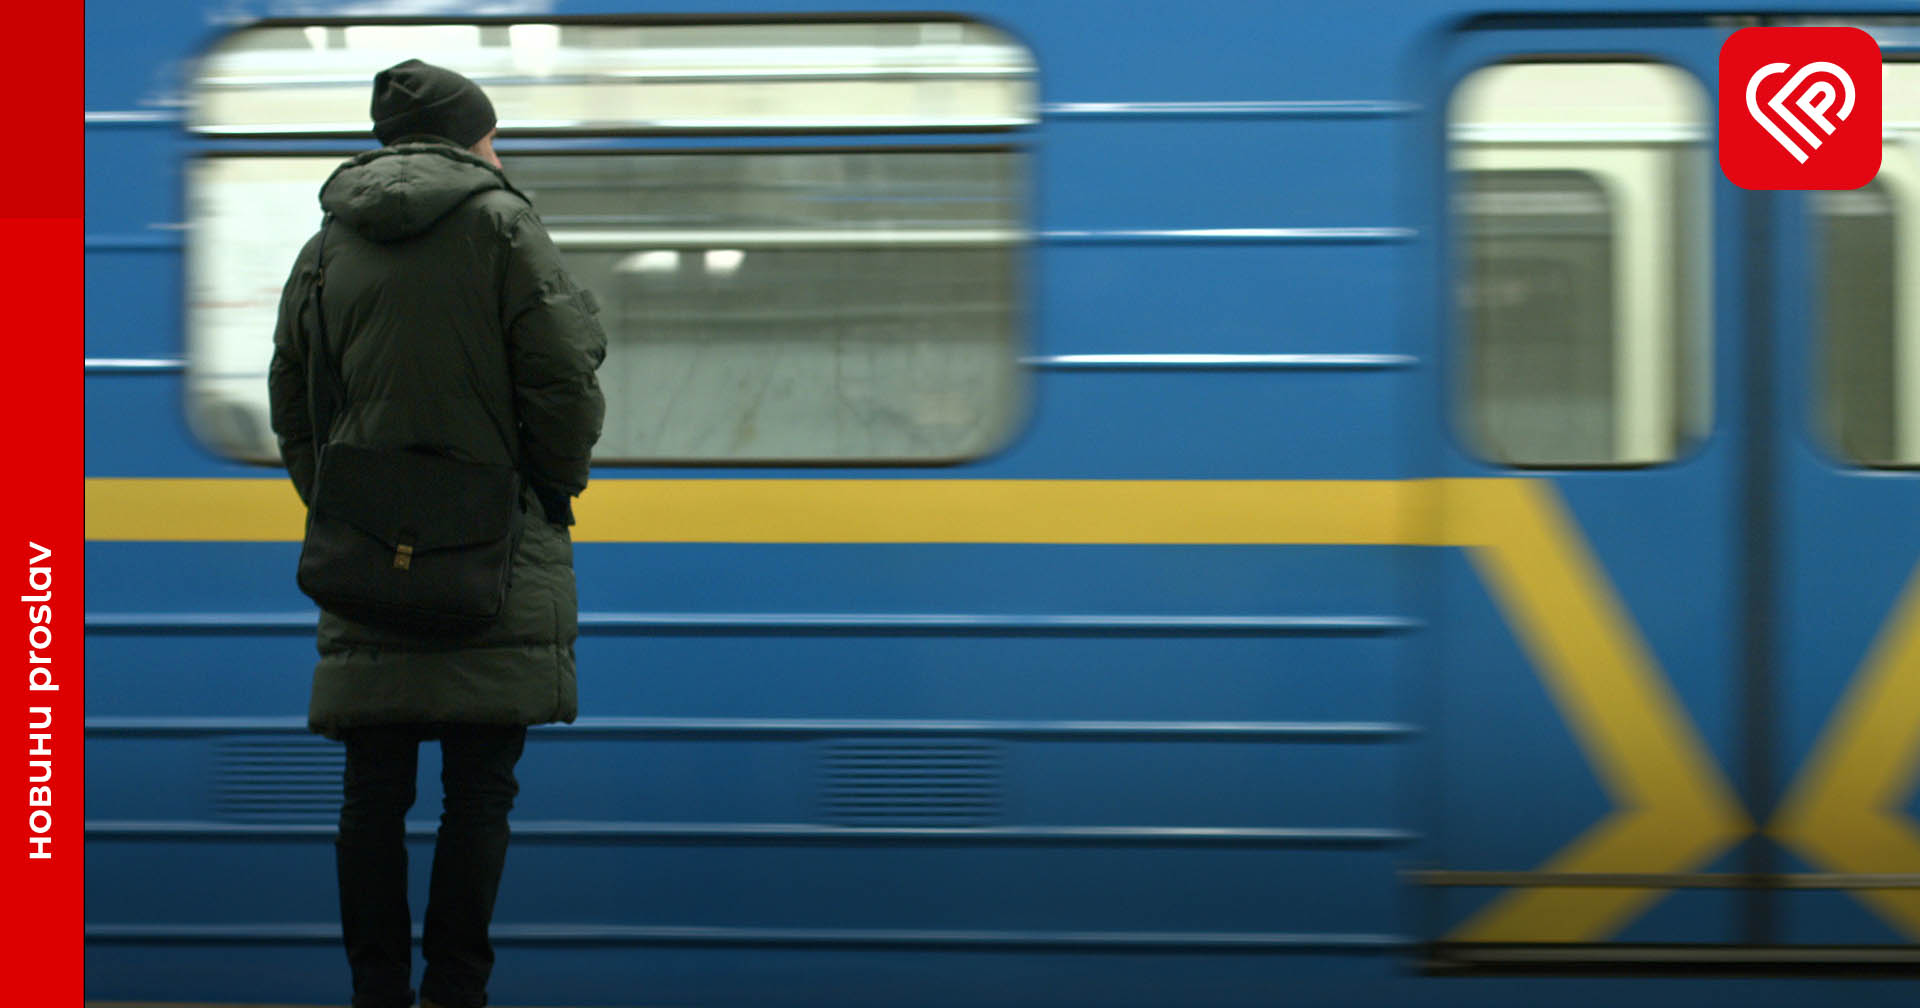 Метрополітен Києва буде працювати за новим графіком. Зміни впроваджують у зв’язку з економією електроенергії